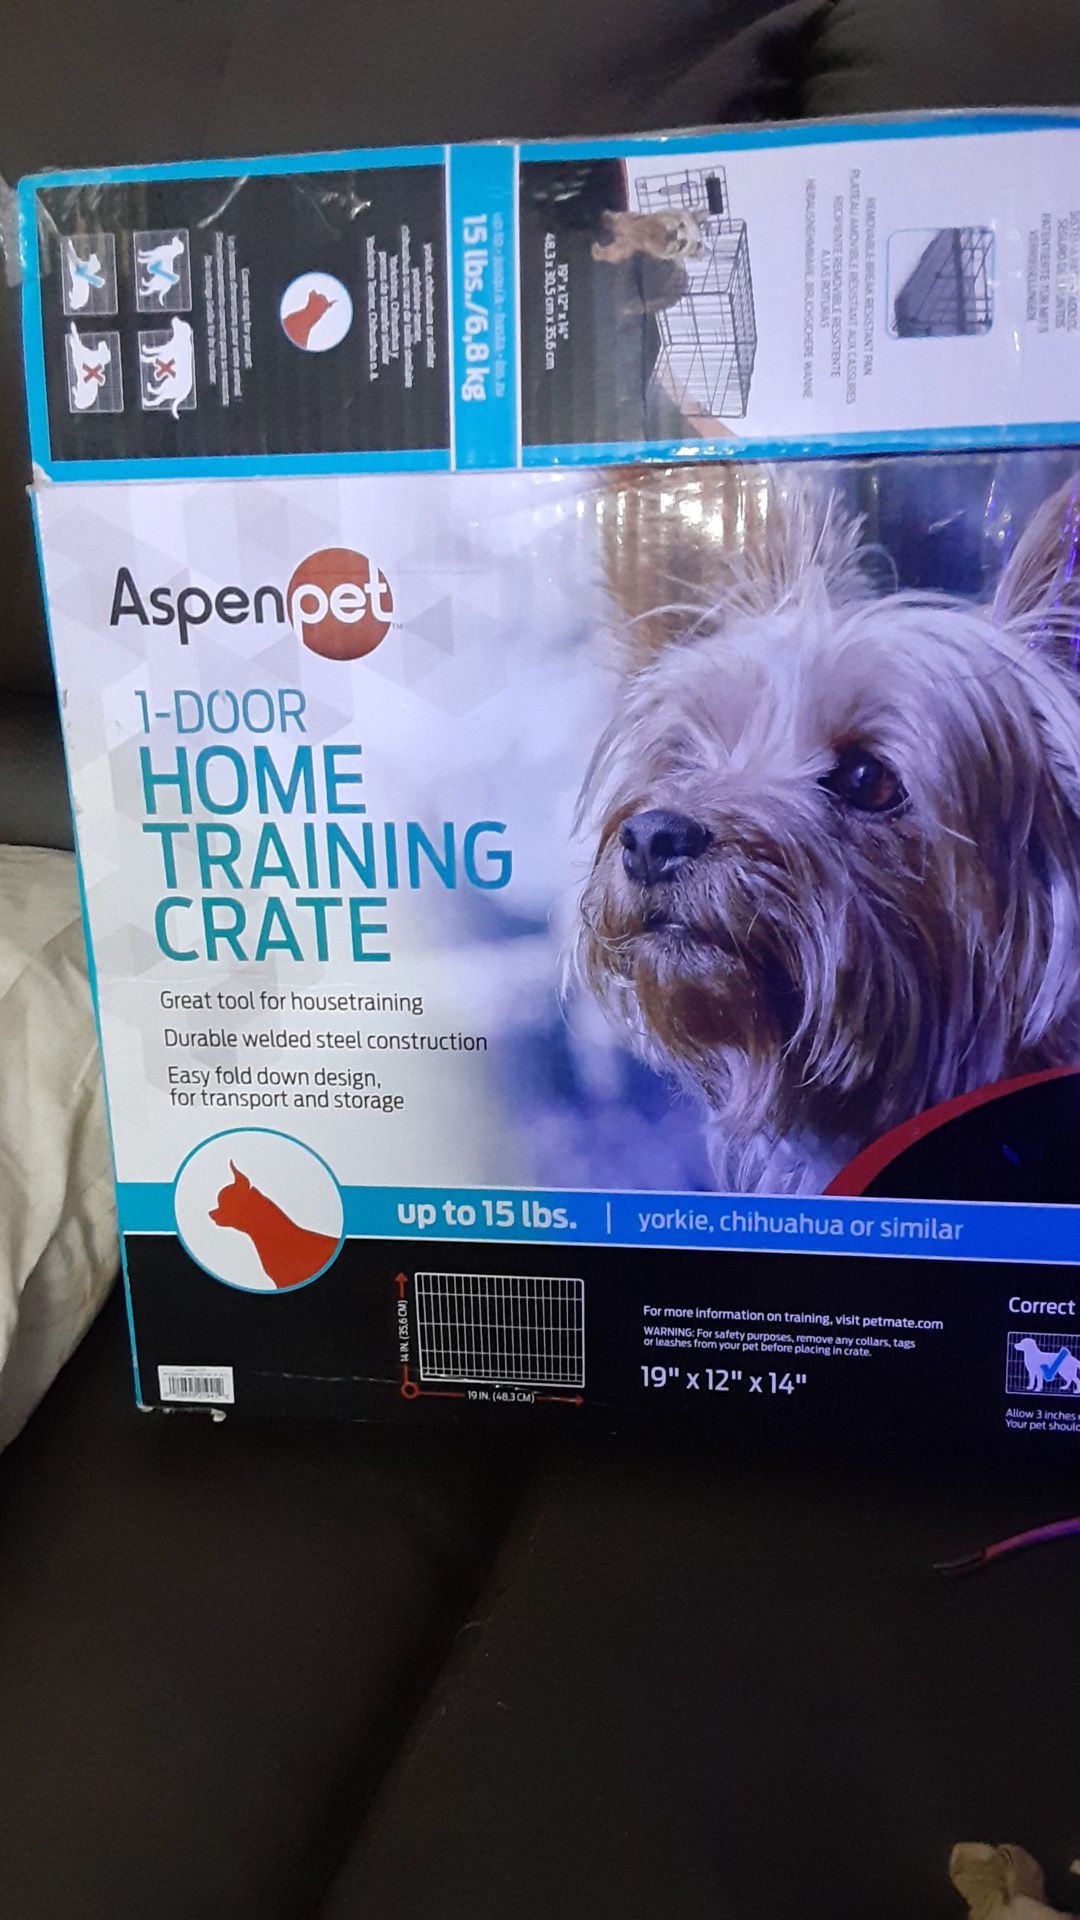 Aspen/pet 1 door home training crate